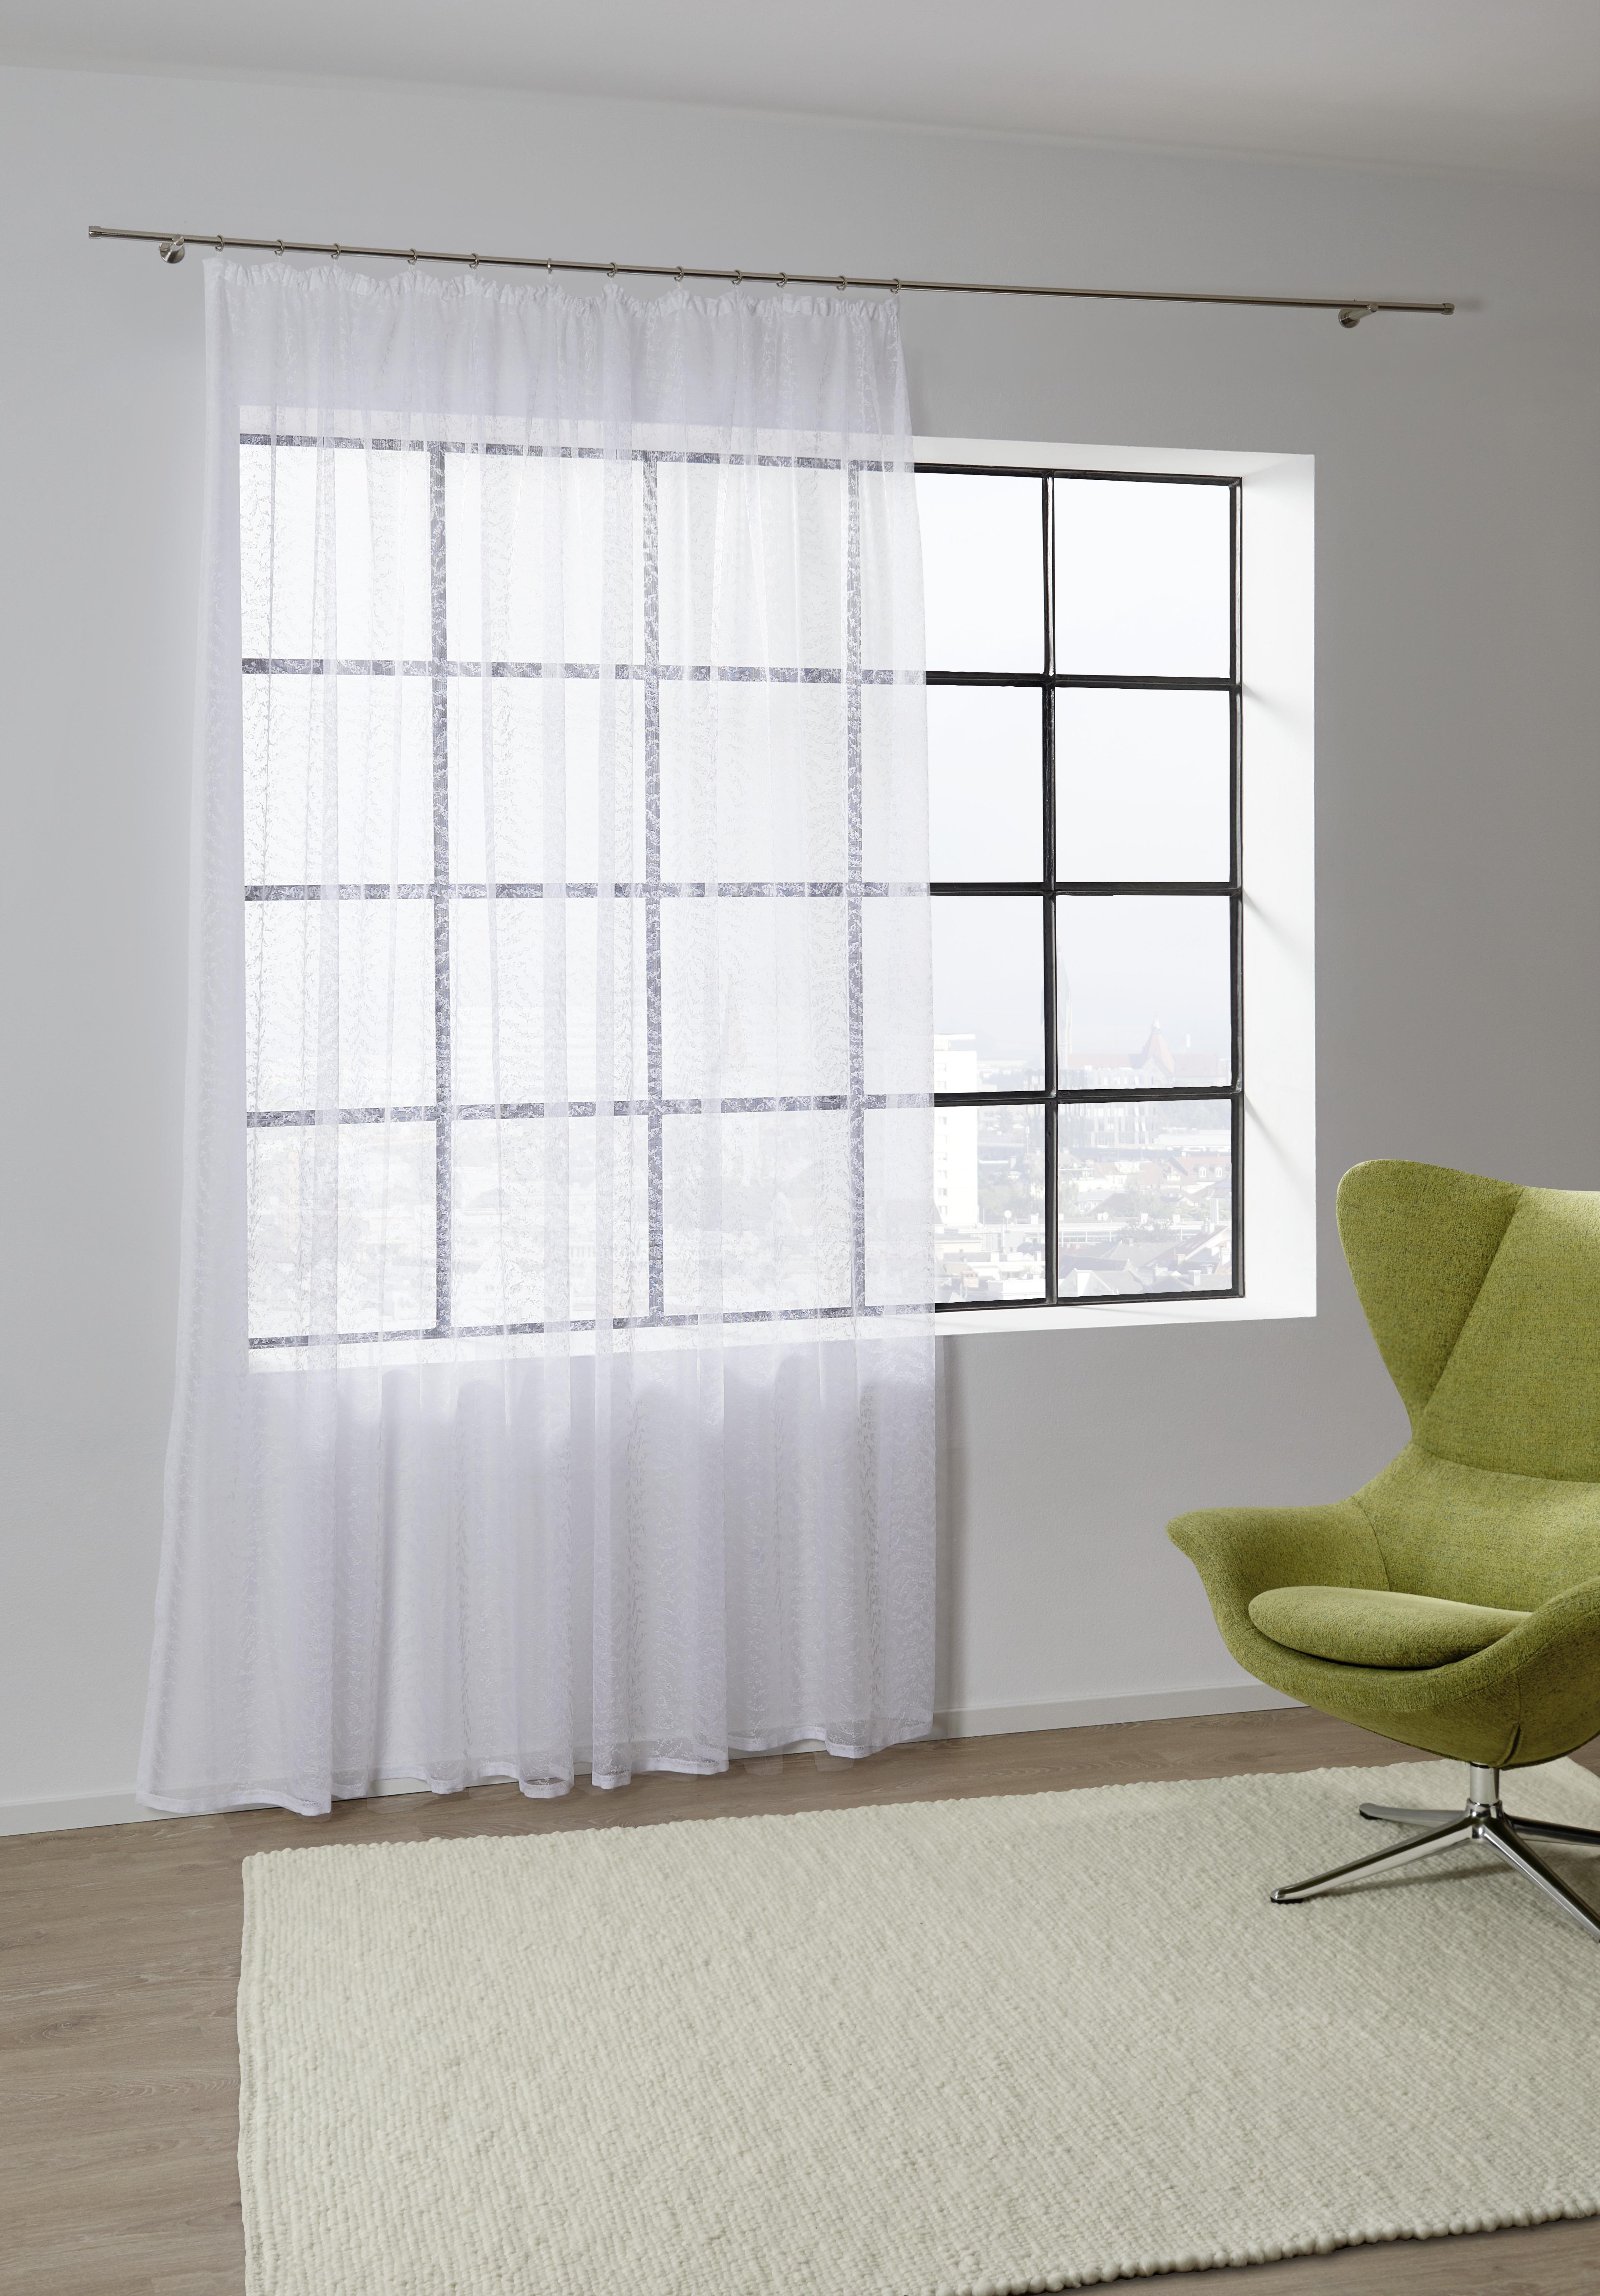 Kusová Záclona Rita Store 3, 300/245cm - biela, Konvenčný, textil (300/245cm) - Modern Living